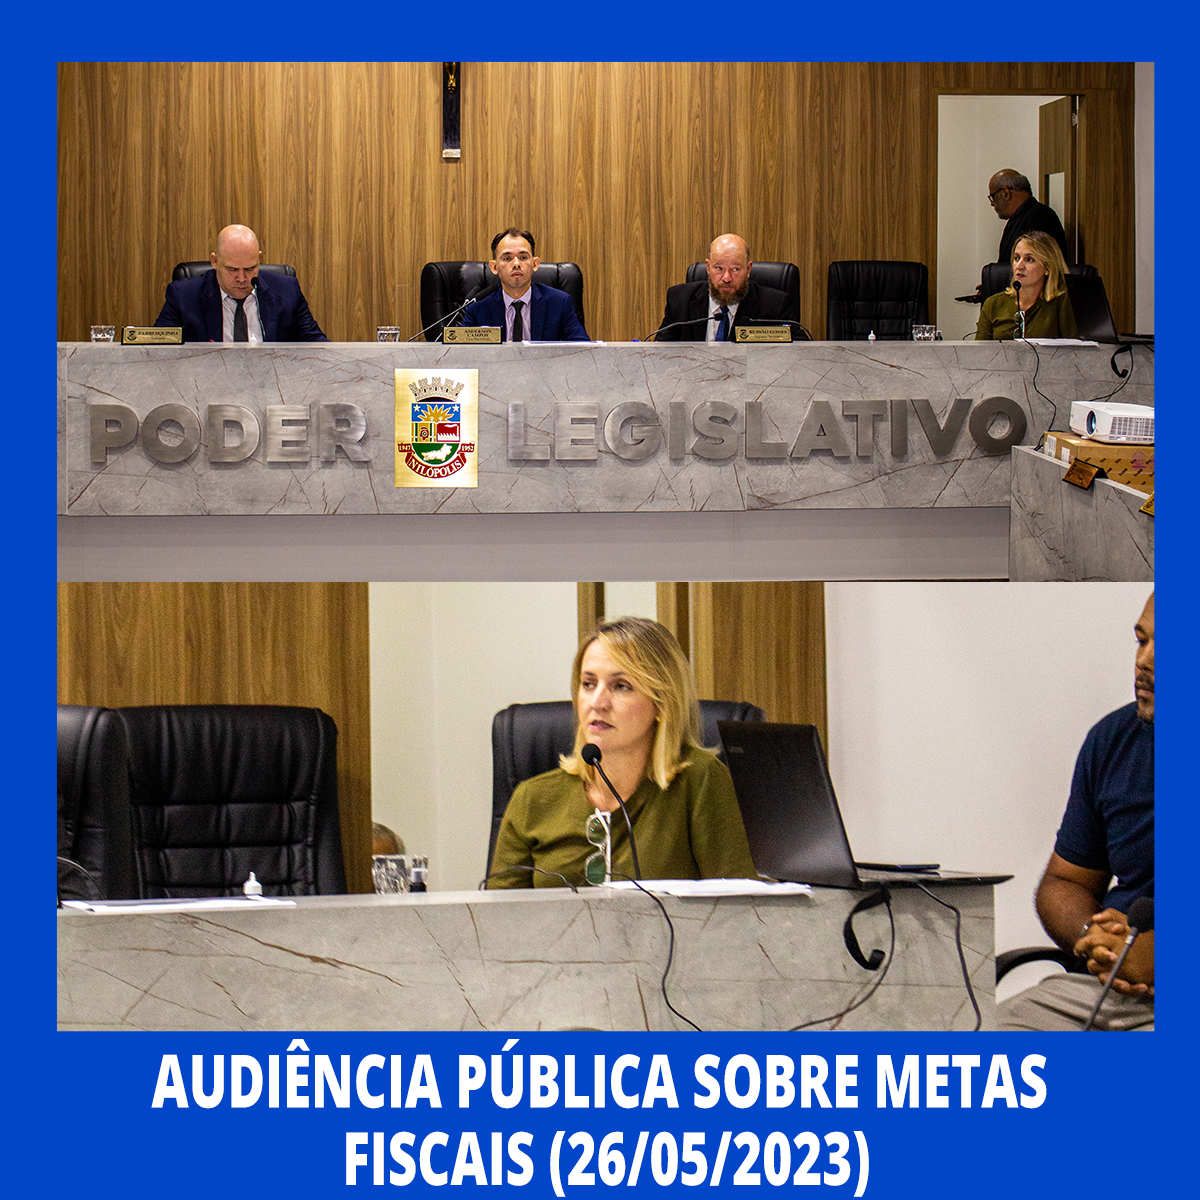 Câmara Municipal de Nilópolis promove Audiência Pública sobre Metas Fiscais do Poder Executivo do Município (26/05/2023).